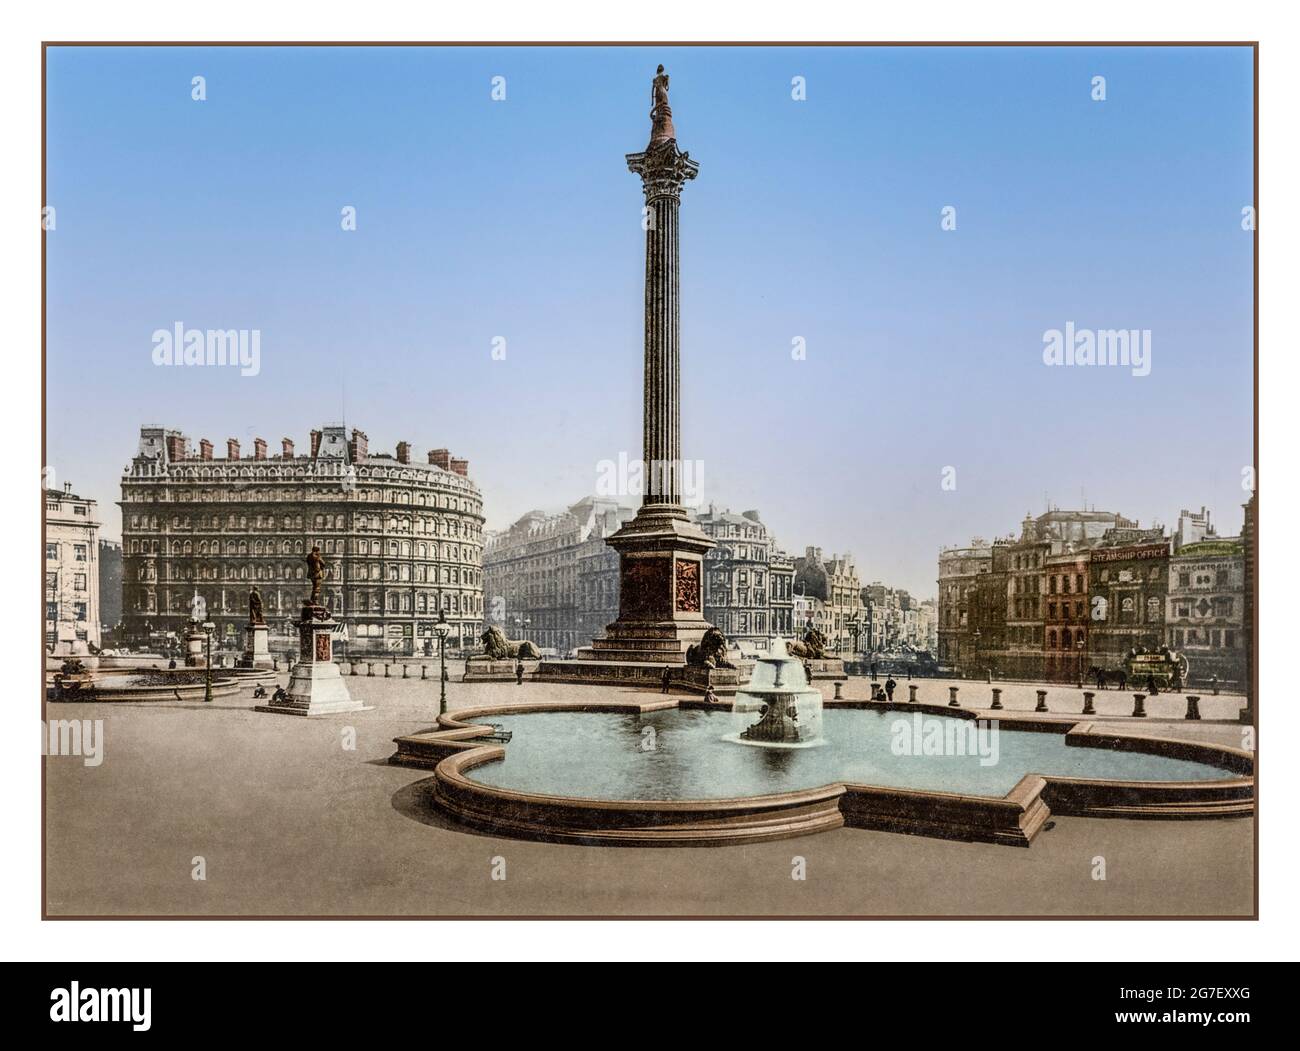 NELSONS COLUMN TRAFALGAR SQUARE 1900 Victorian London. Trafalgar Square Fecha de creación/publicación: [Ca. 1890-1906] photochrom color Foto de stock